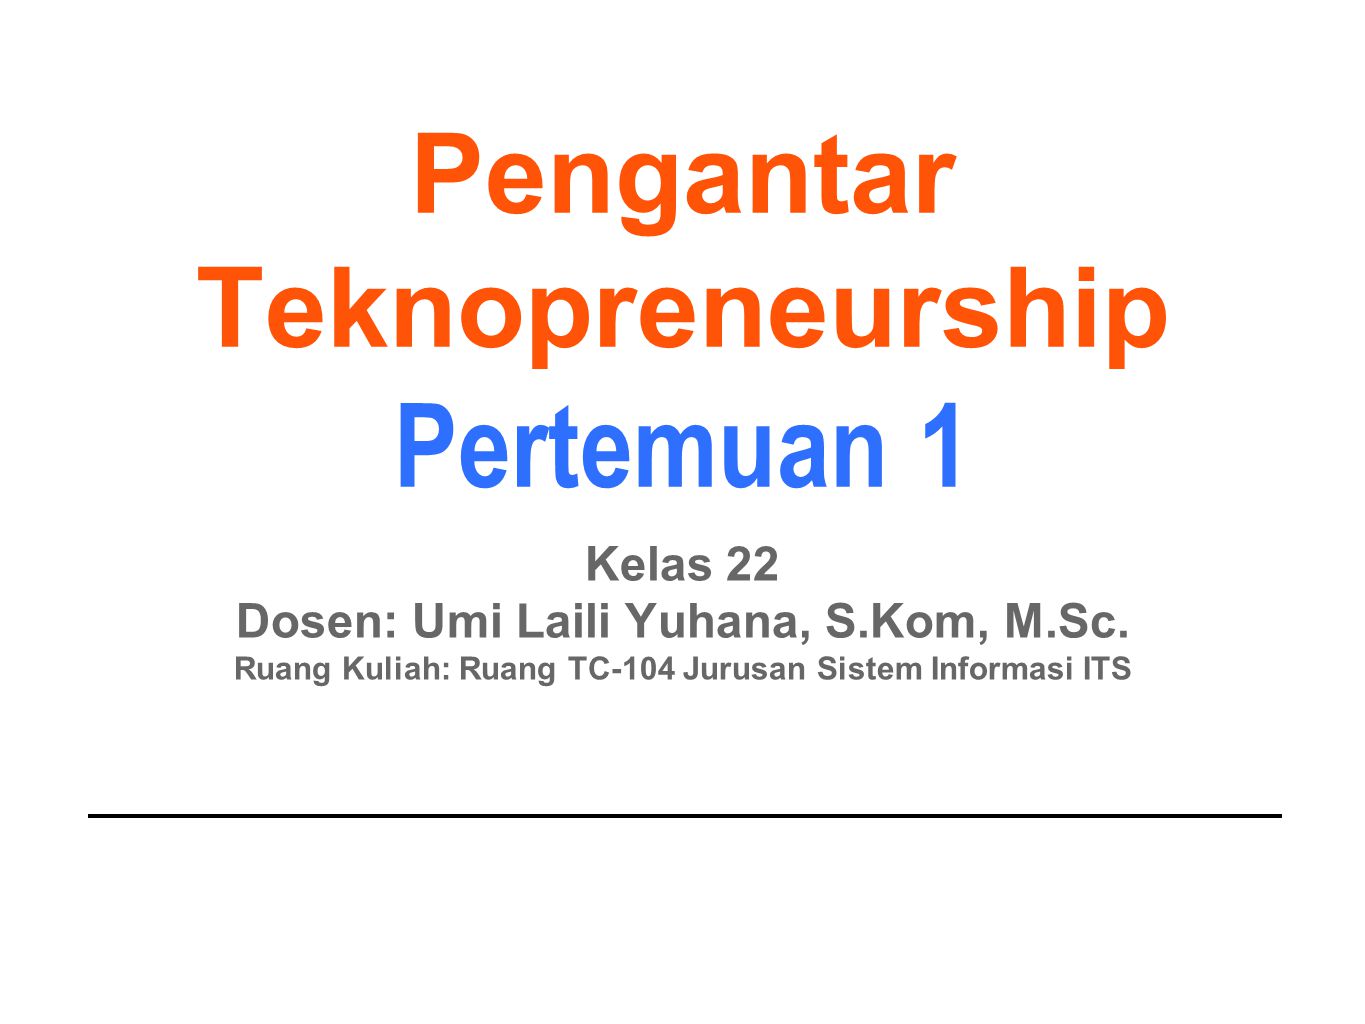 Pengantar Teknopreneurship Pertemuan 1